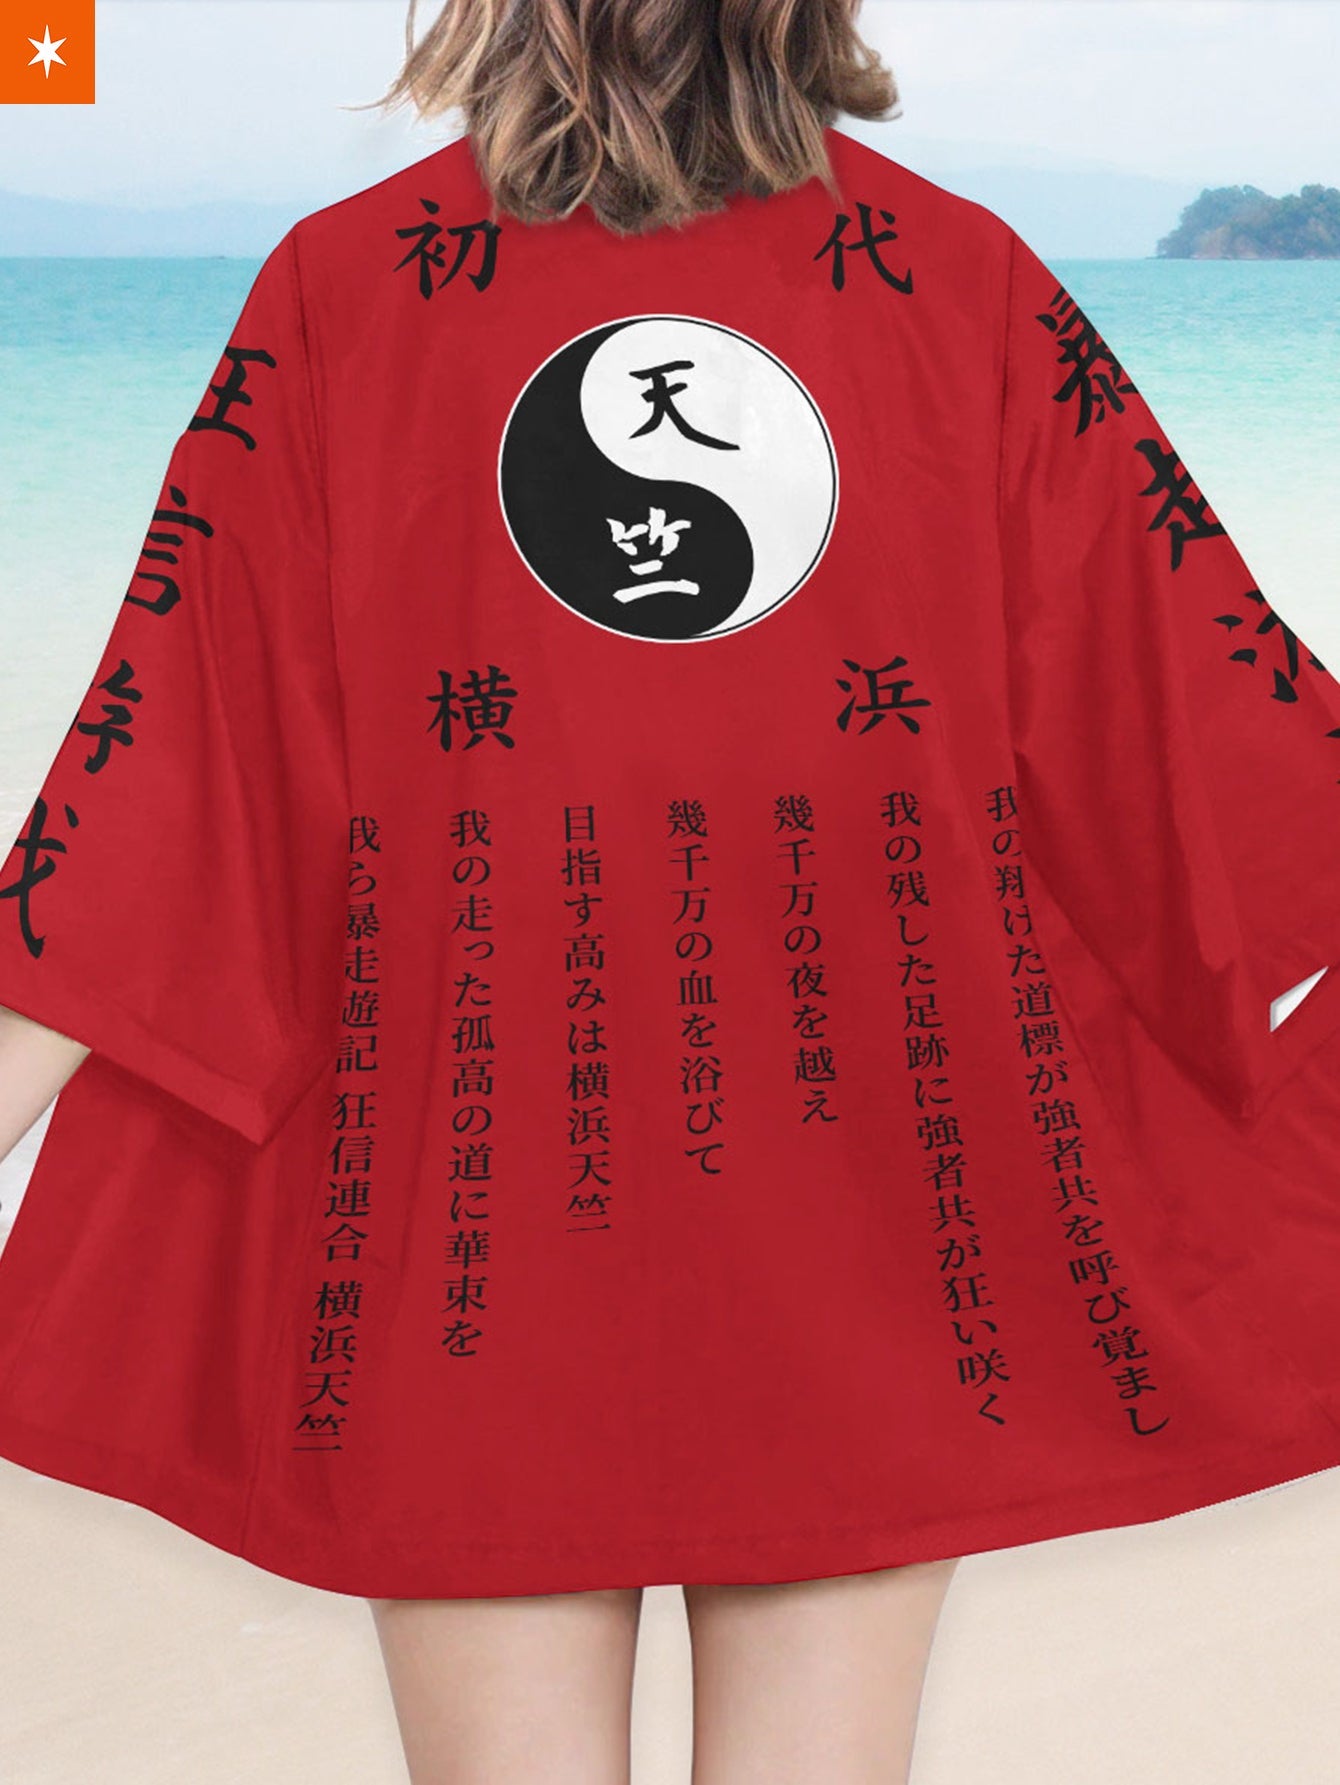 Fandomaniax - Red Tenjiku Kimono